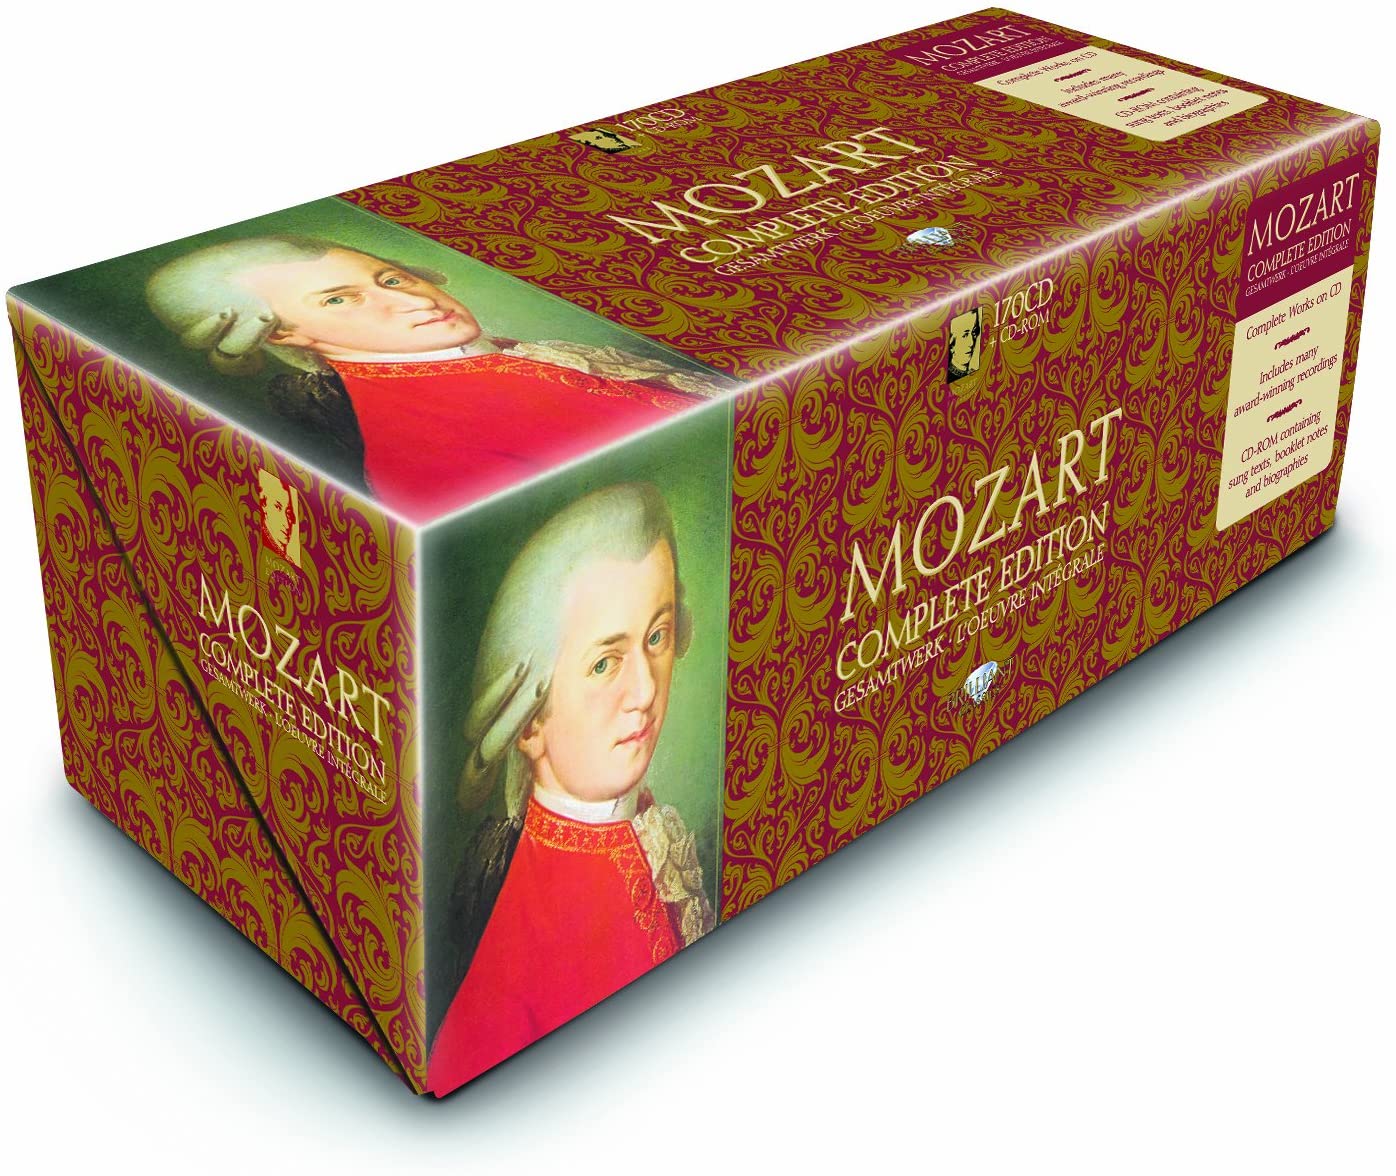 8,991円モーツァルト全集 Mozart complete edition DVD付き